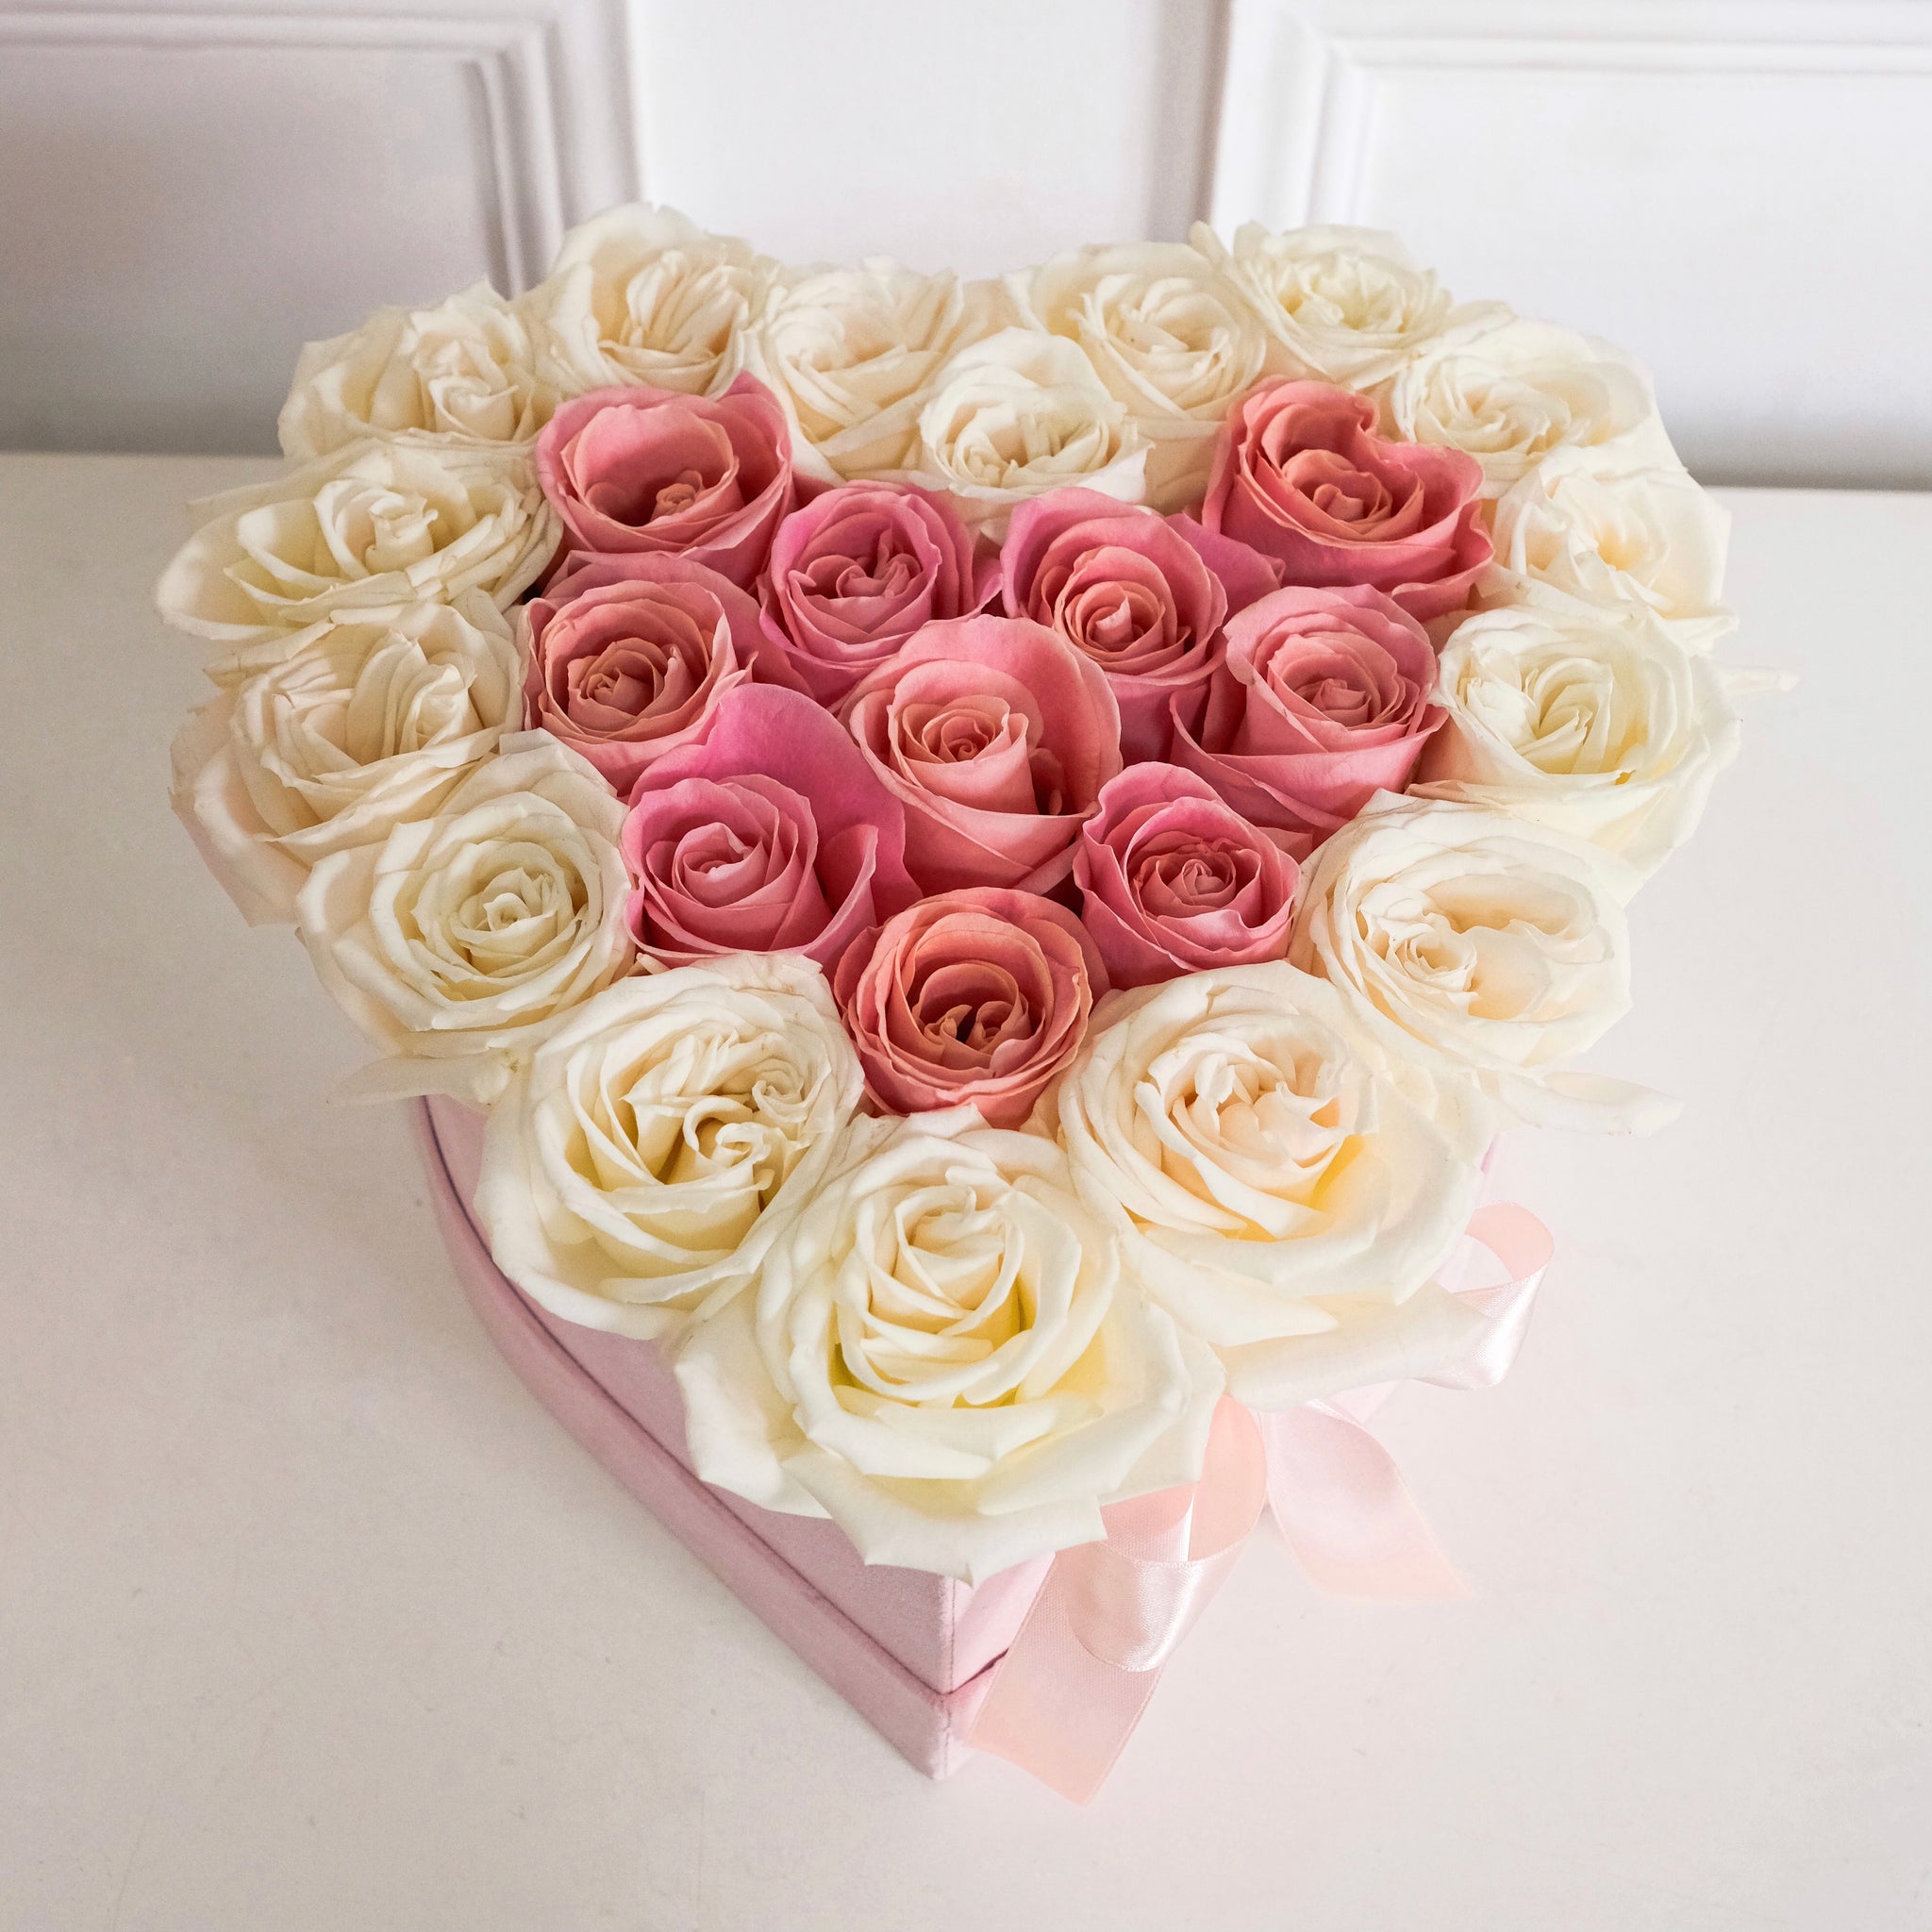 Roses - Petite Velvet Heart Box